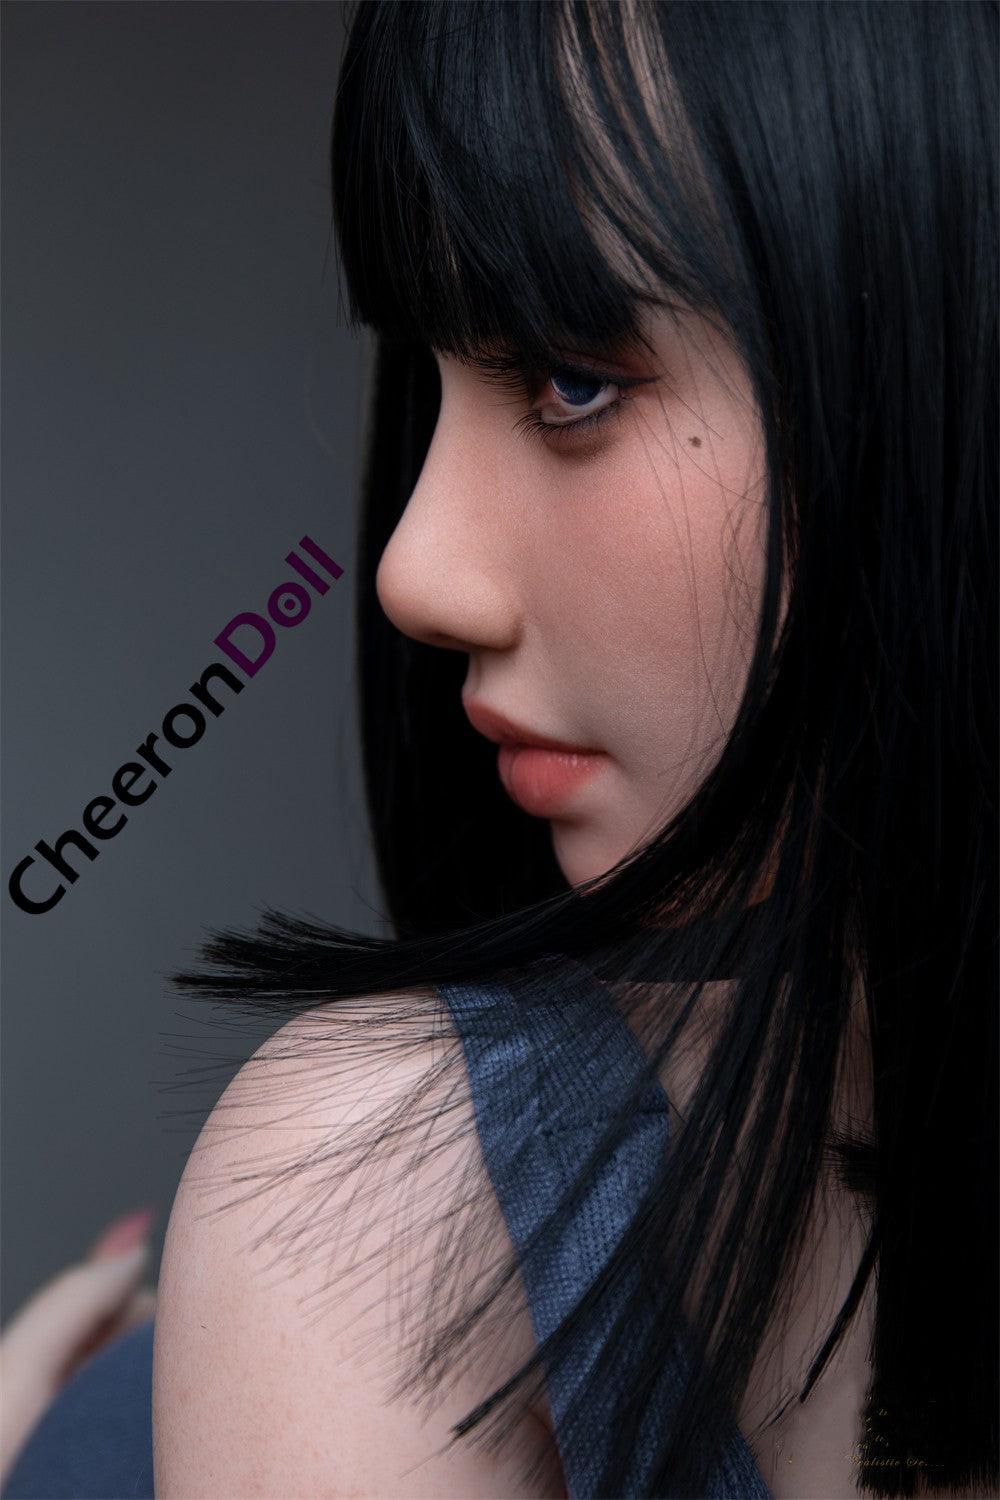 CHEERONDOLL 153CM REALISTIC SILICONE ASIAN SEX DOLL S30 SHORT HAIR RITA - Cheeron Doll